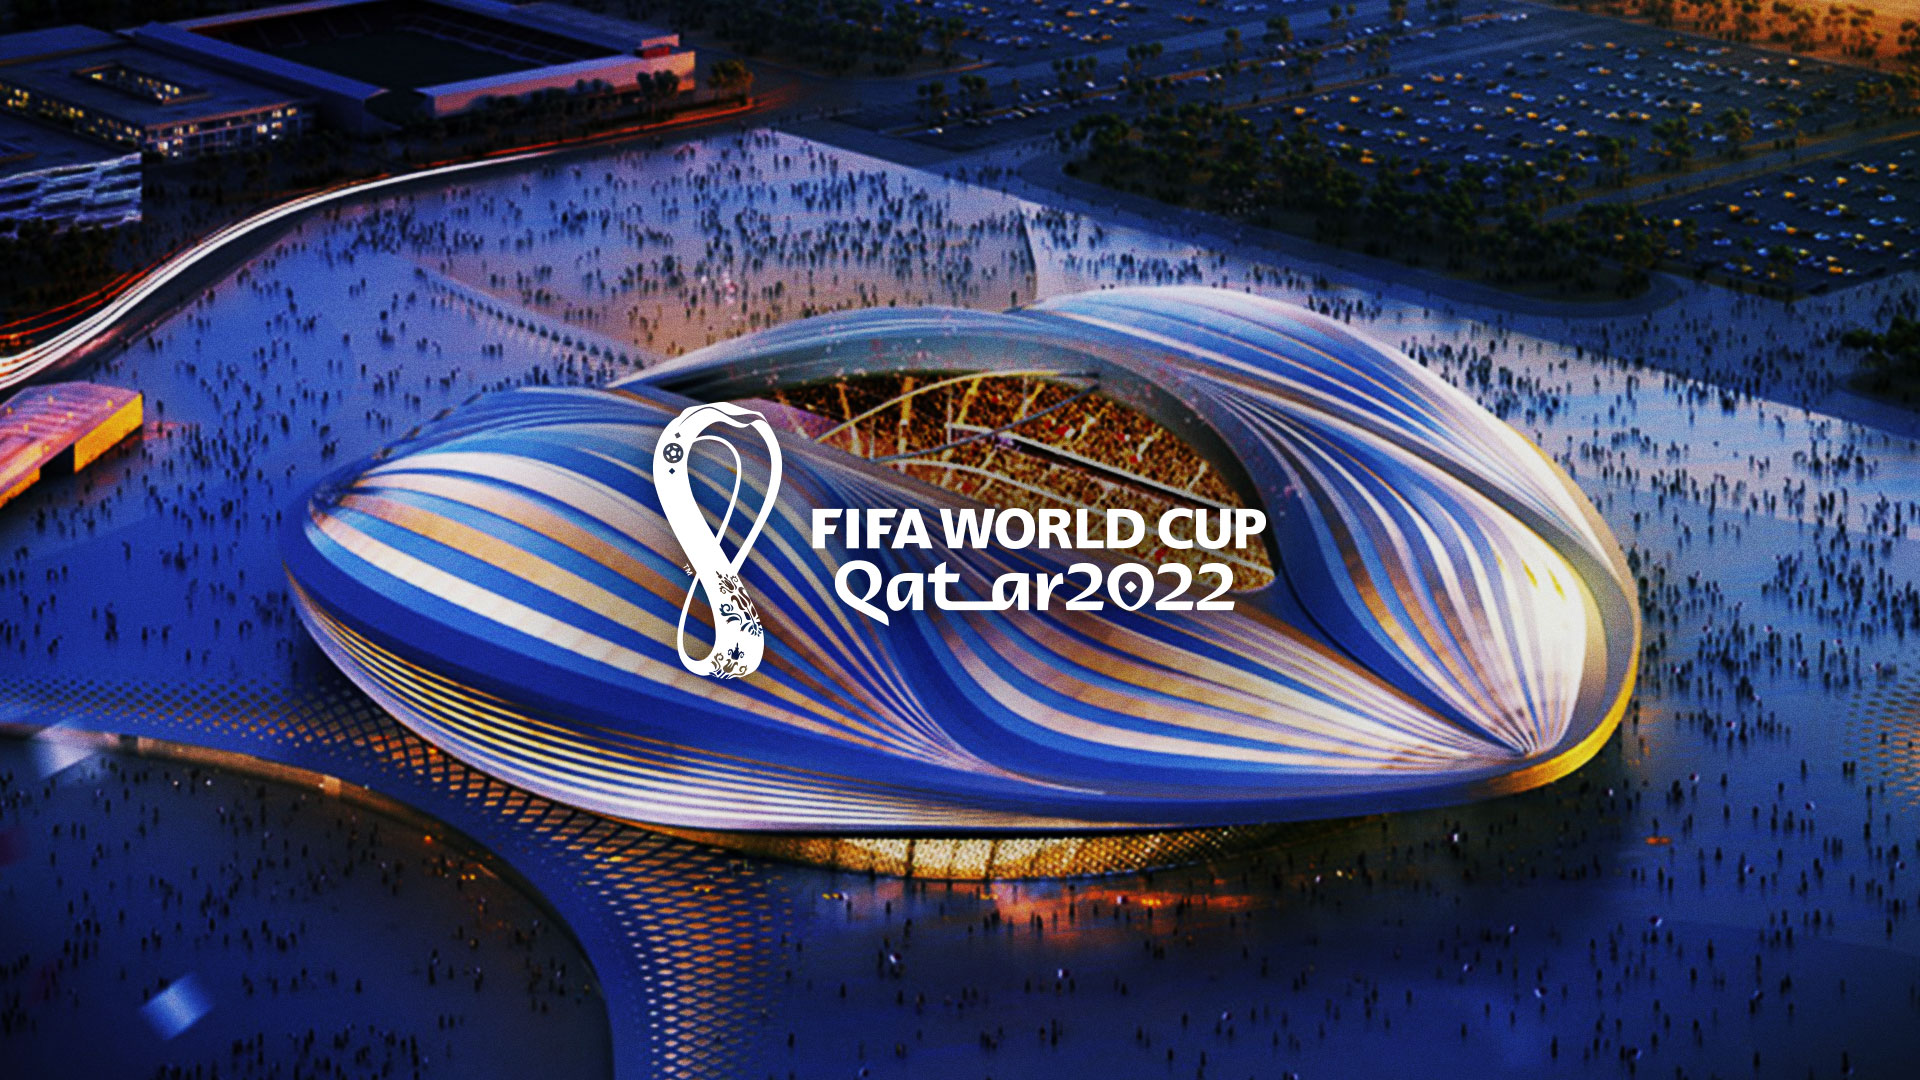 World Cup 2022: Những ngày đang đến gần hơn, đó là ngày khai mạc World Cup 2022 tại Quatar. Bạn đang háo hức chờ đợi để thưởng thức những trận đấu đỉnh cao của bóng đá thế giới và cổ vũ cho đội tuyển yêu thích của mình. Hãy cùng theo dõi từng bước tiến của các đội bóng, từ những trận đấu sớm cho đến chung kết, tại giải vô địch bóng đá lớn nhất hành tinh.